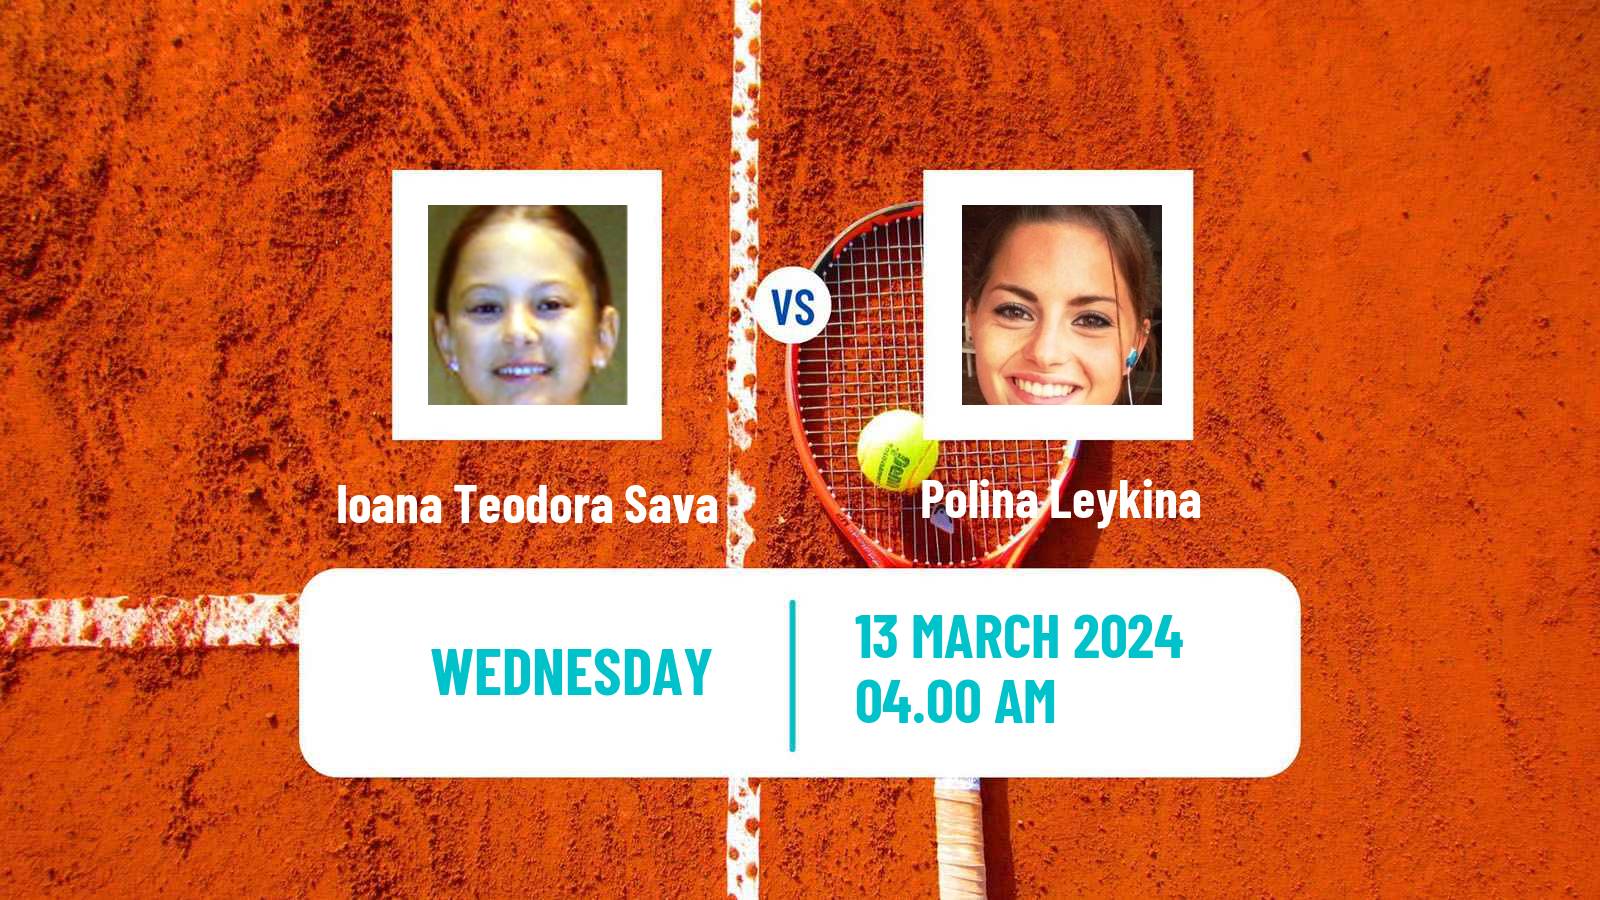 Tennis ITF W15 Heraklion 2 Women Ioana Teodora Sava - Polina Leykina